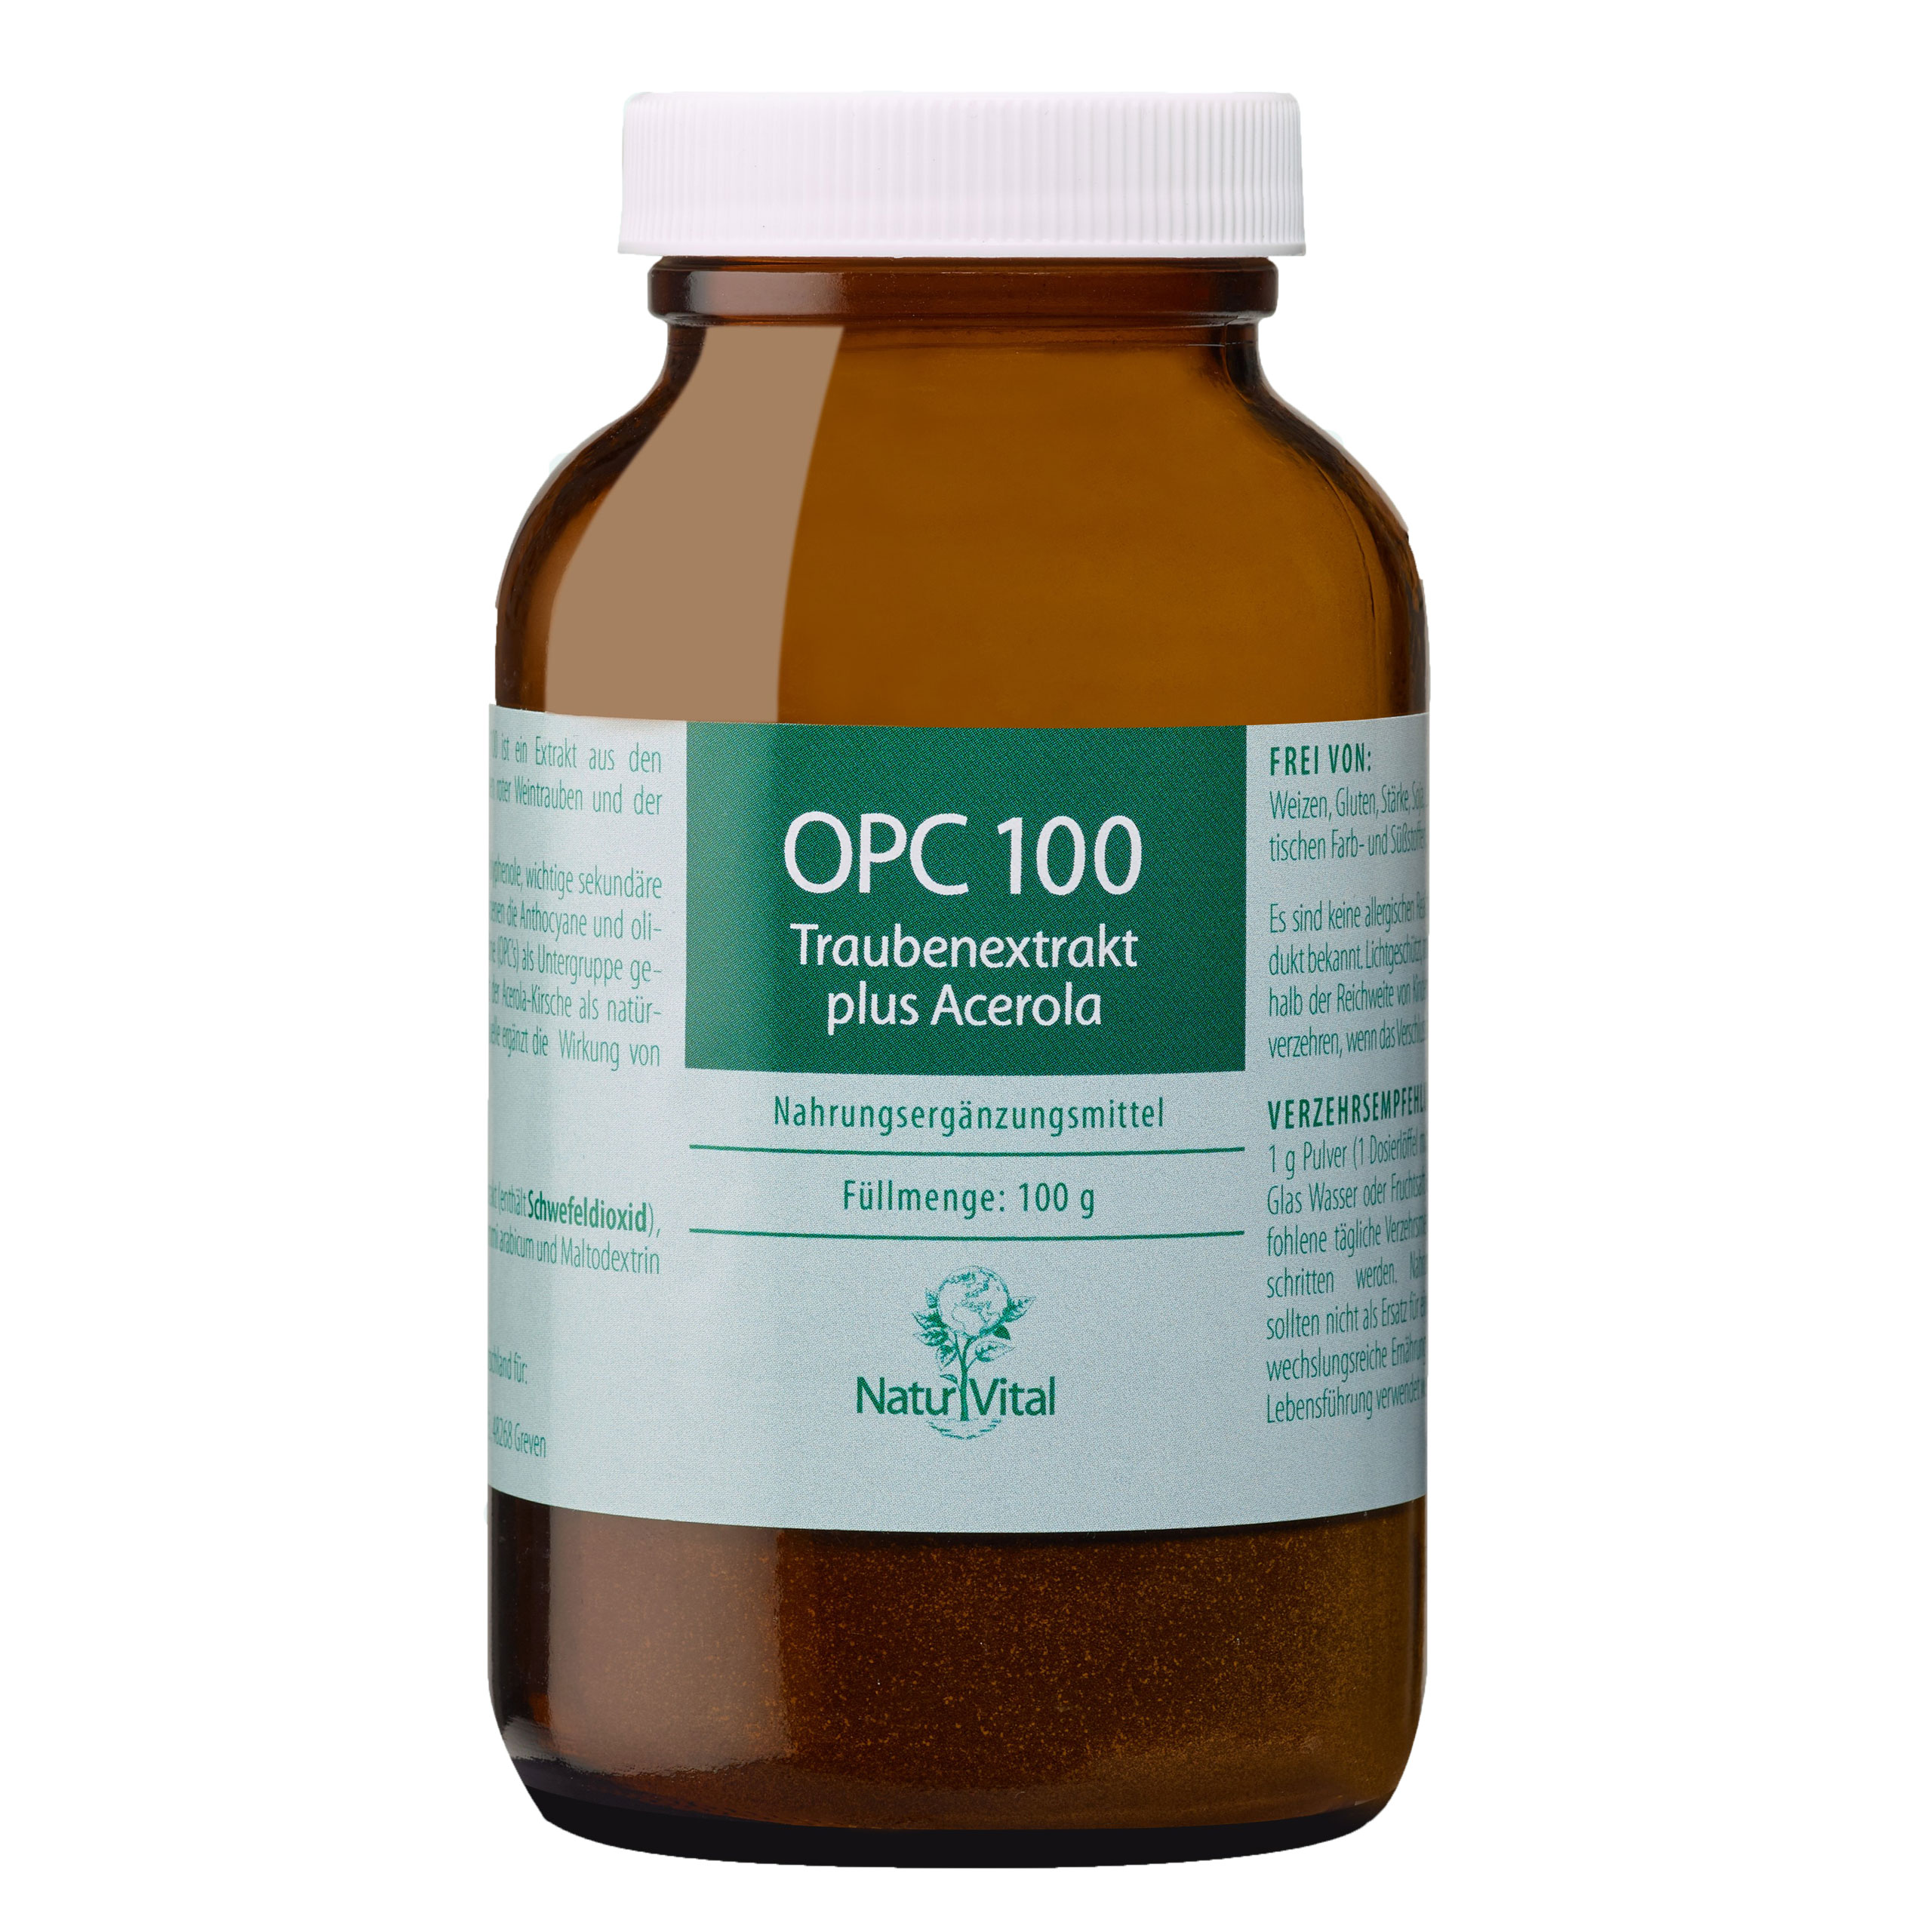 OPC 100 mit Acerola von Natur Vital beinhaltet 100 Gramm